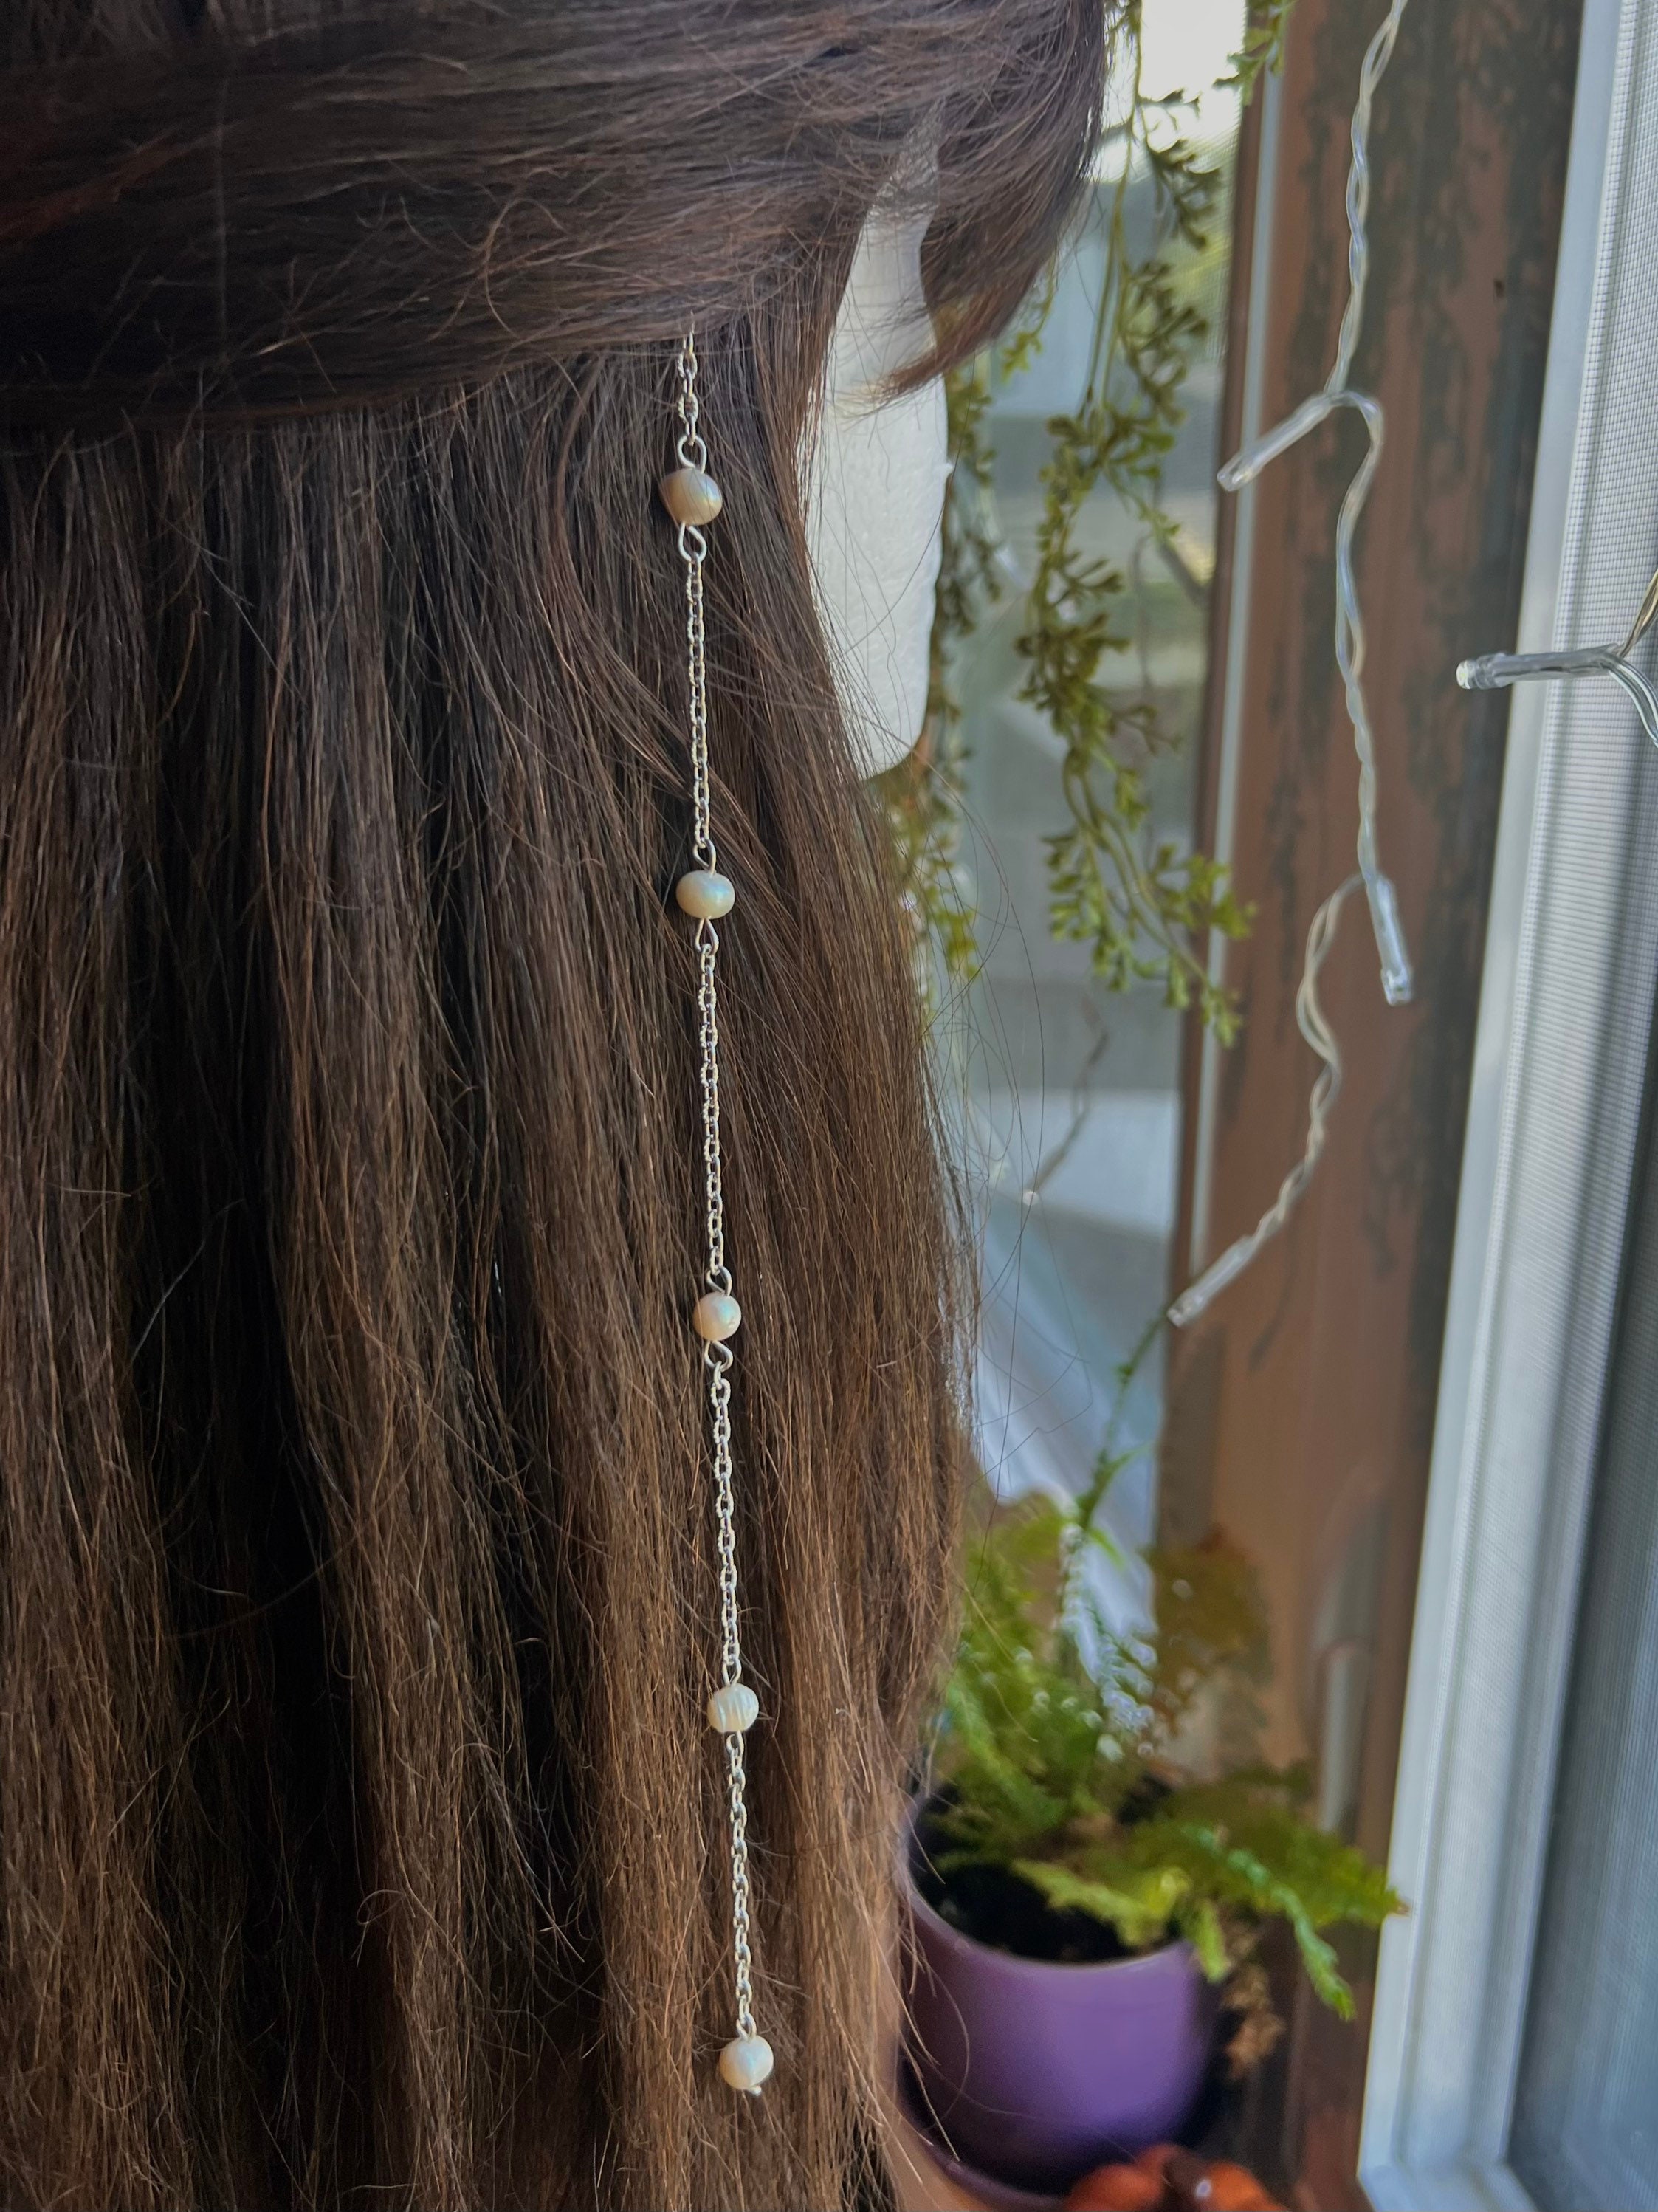 Hanging Chain Barrette – HETTIE HAIR ACCESSORIES